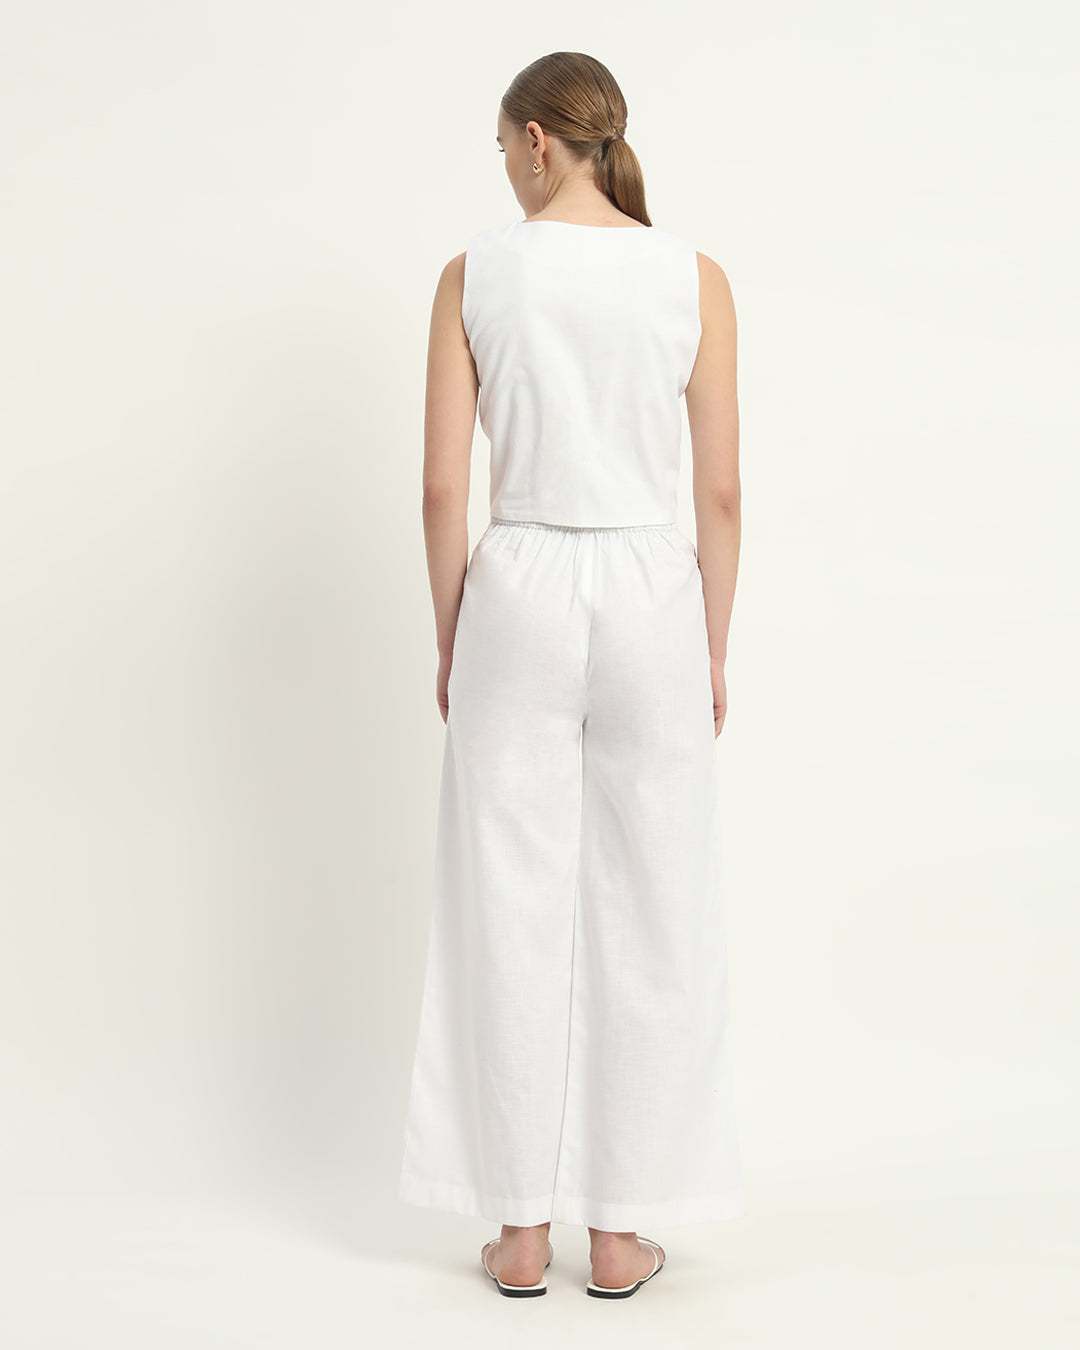 Pants Matching Set- White Linen V Neck Overlap